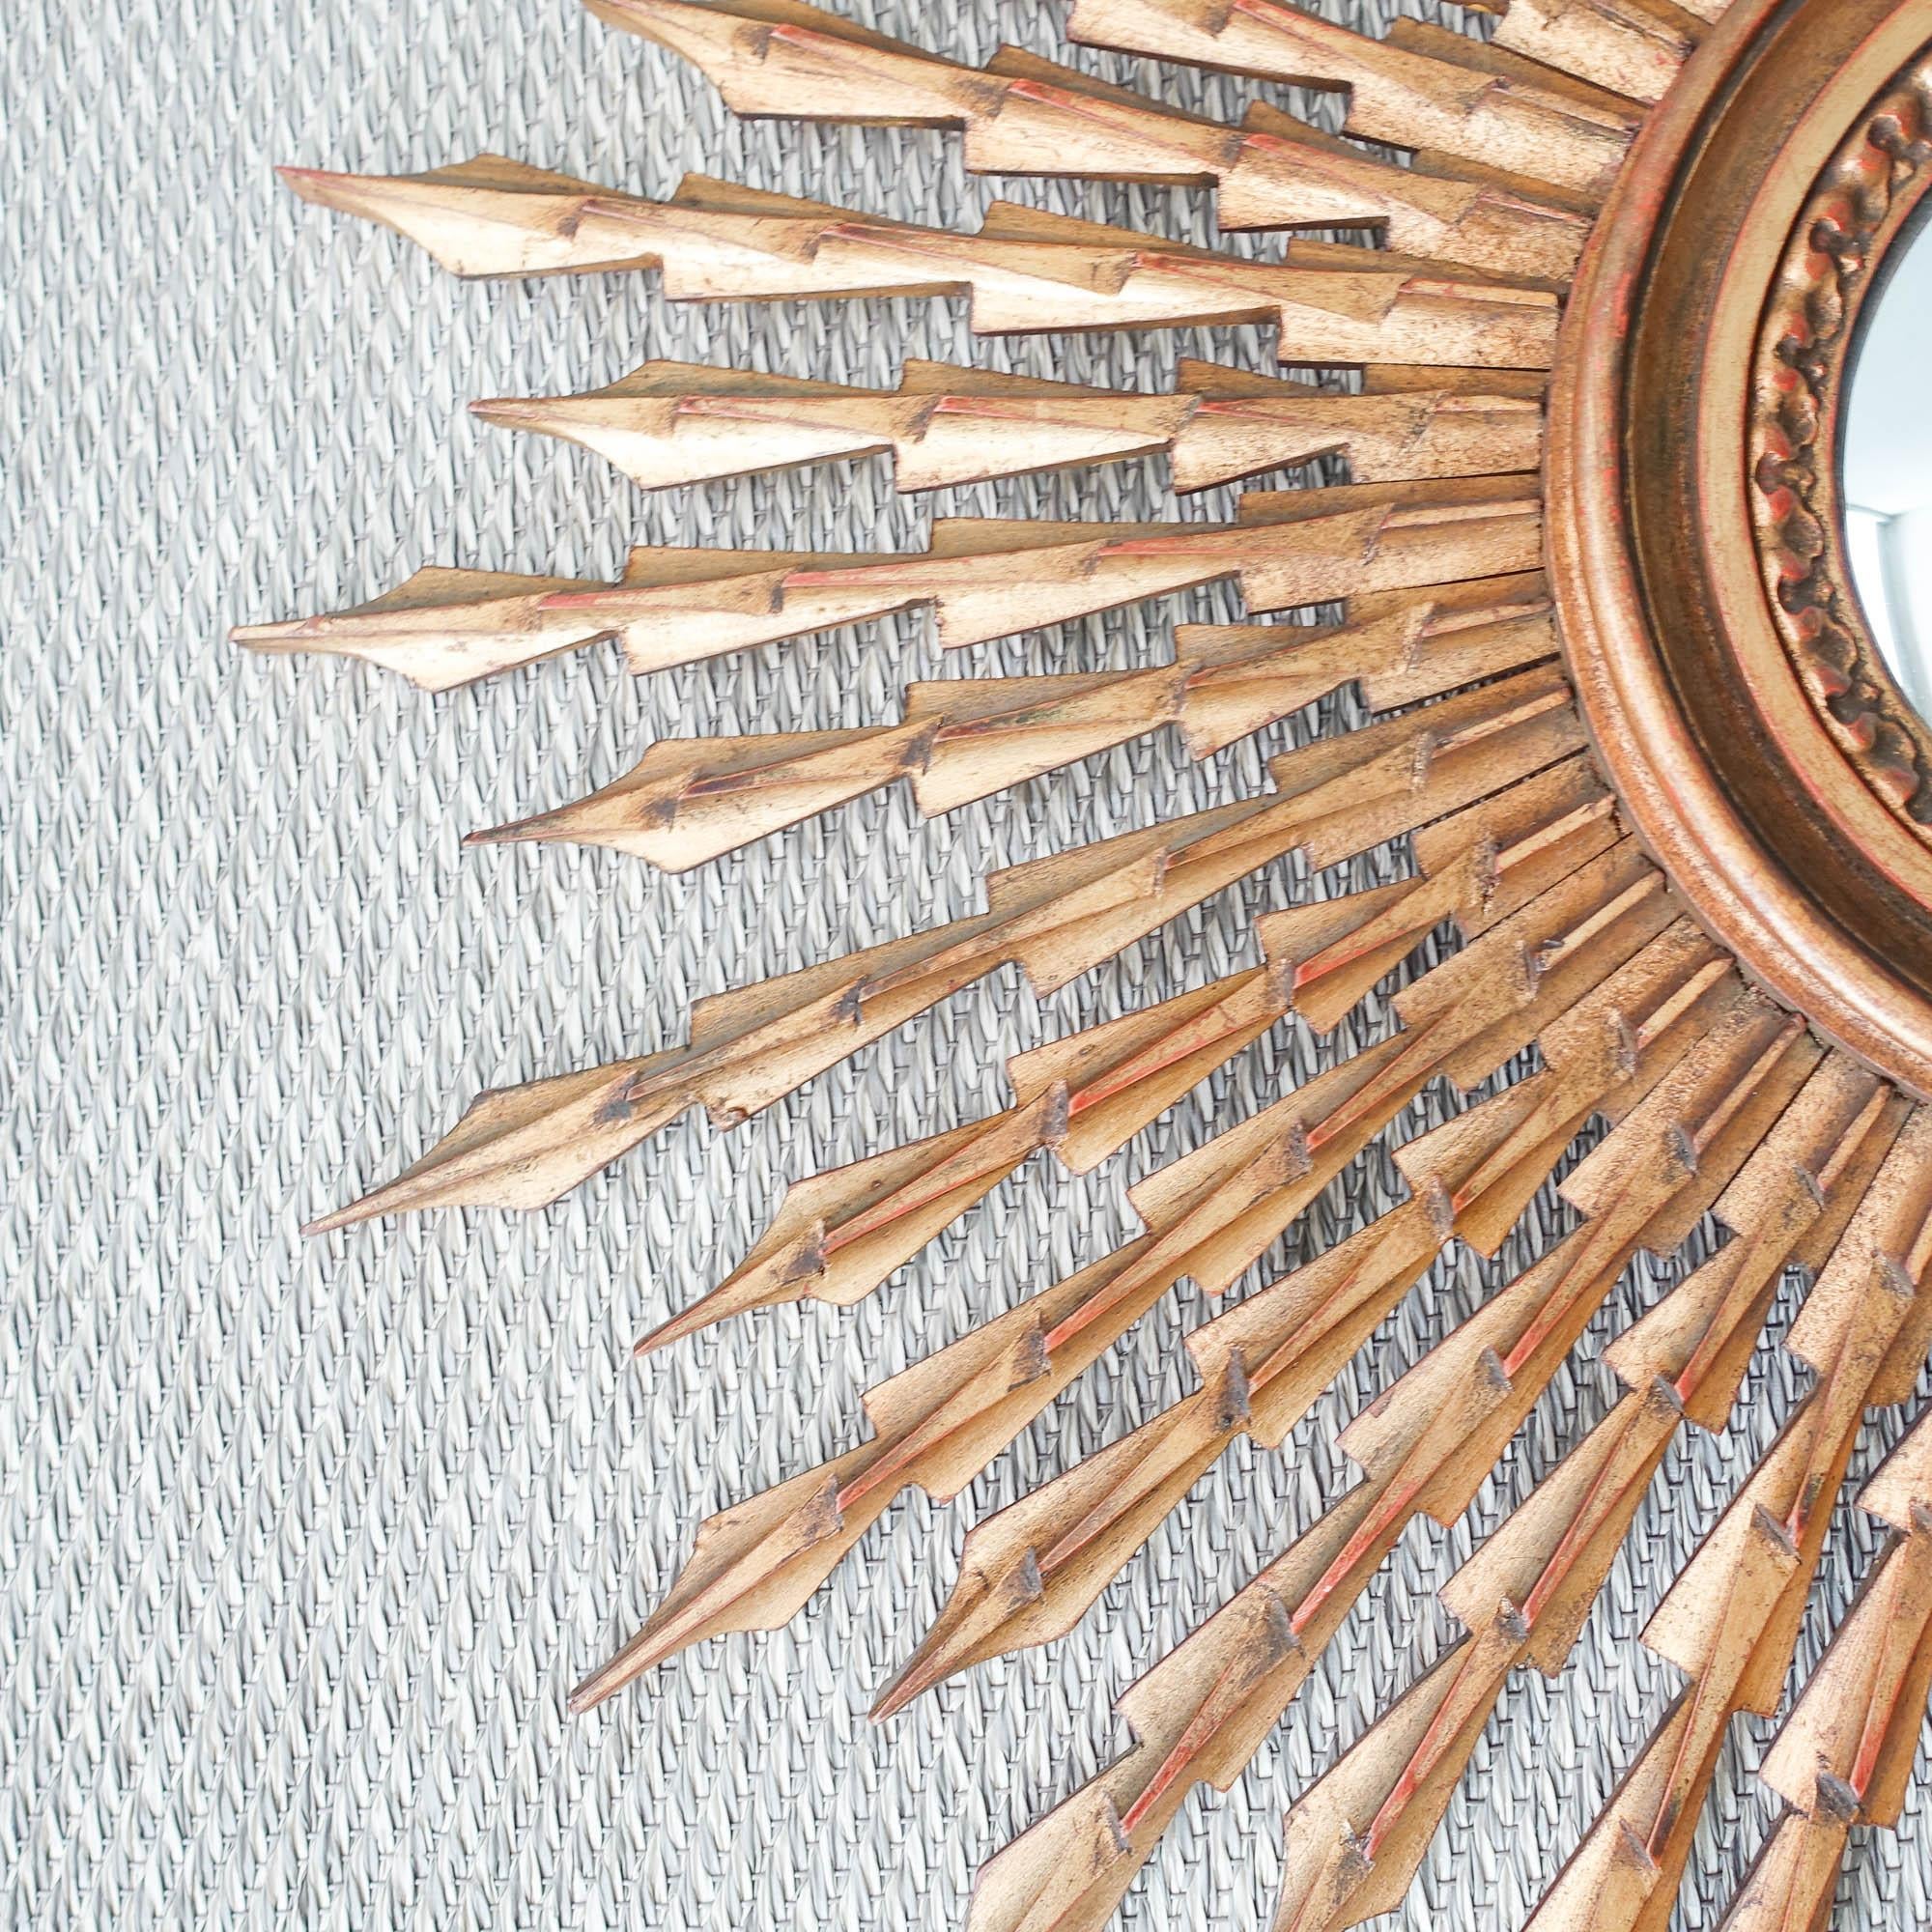 Dieser Spiegel mit Sonnenschliff wurde in den 1950er Jahren in Portugal entworfen und hergestellt.
Es hat einen geschnitzten Rahmen aus vergoldetem Holz, der aus einer Schicht von langen und kürzeren Strahlen besteht. Der Ring, der den zentralen